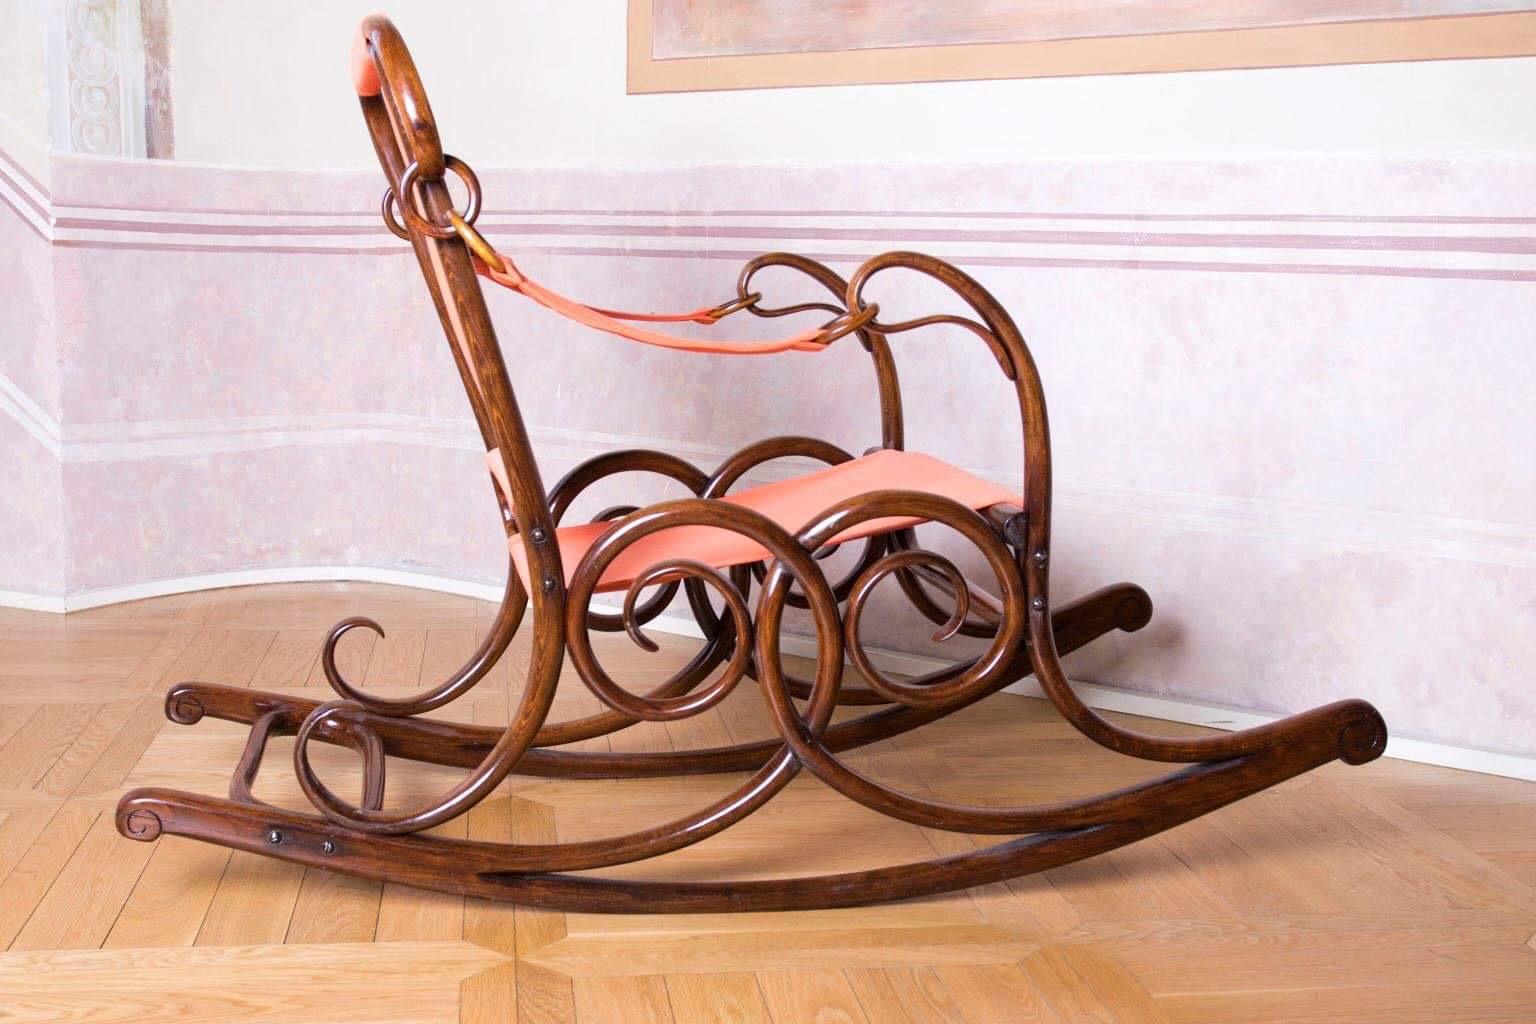 Wien Thonet Art Nouveau Rocking Chair No.3 For Sale 1